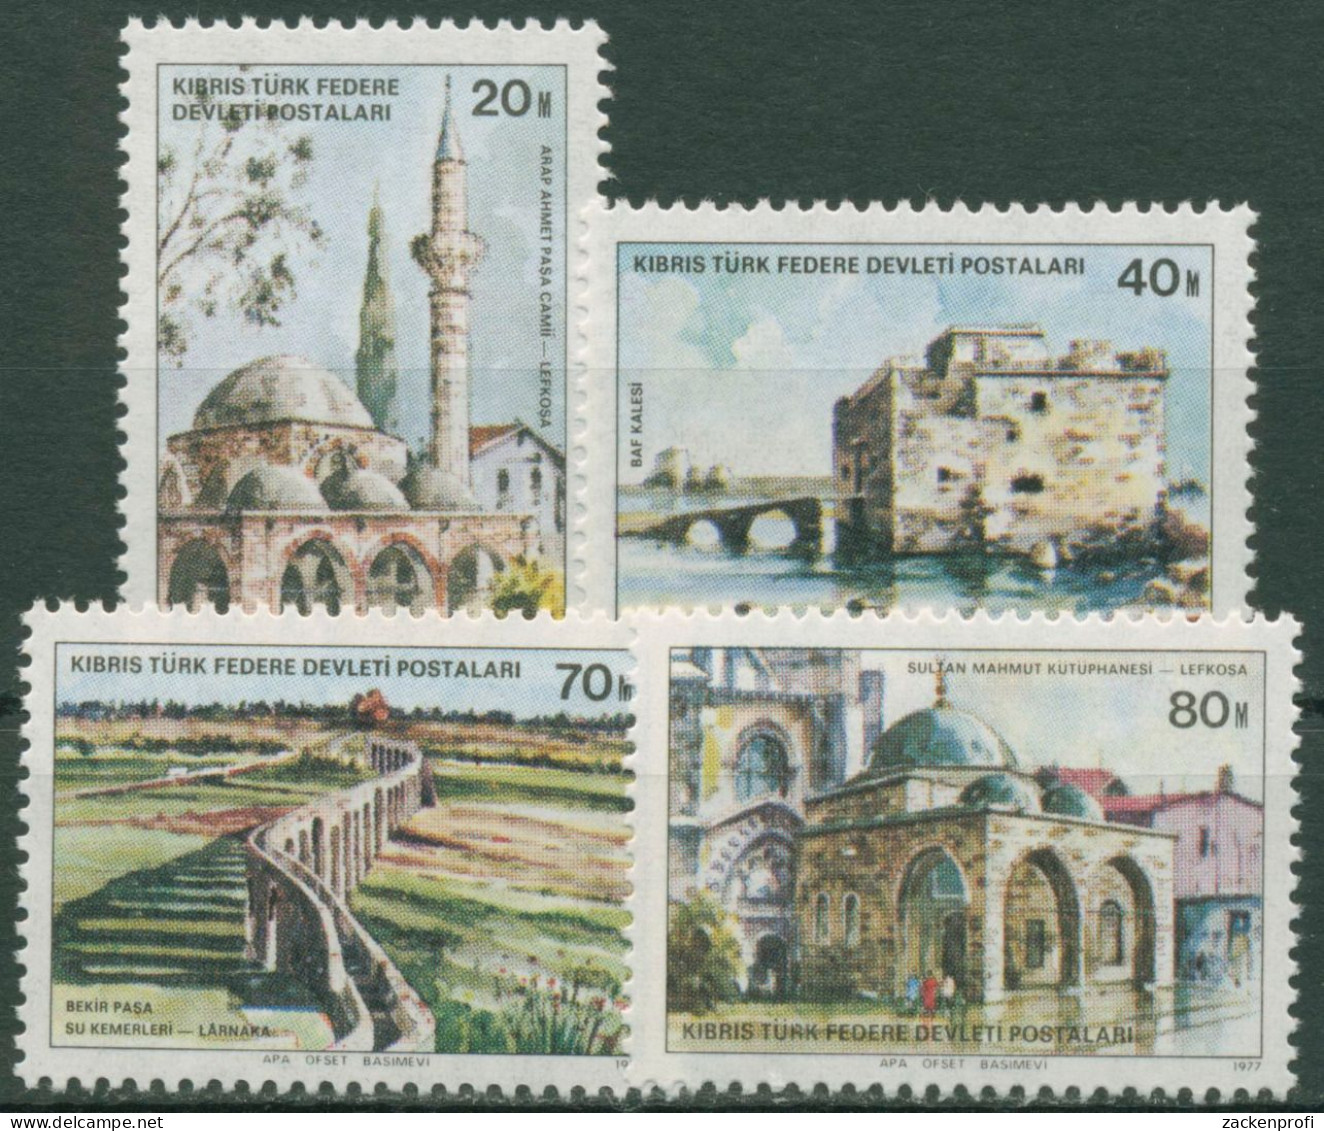 Türkisch-Zypern 1977 Türkische Baudenkmäler 46/49 Postfrisch - Ungebraucht